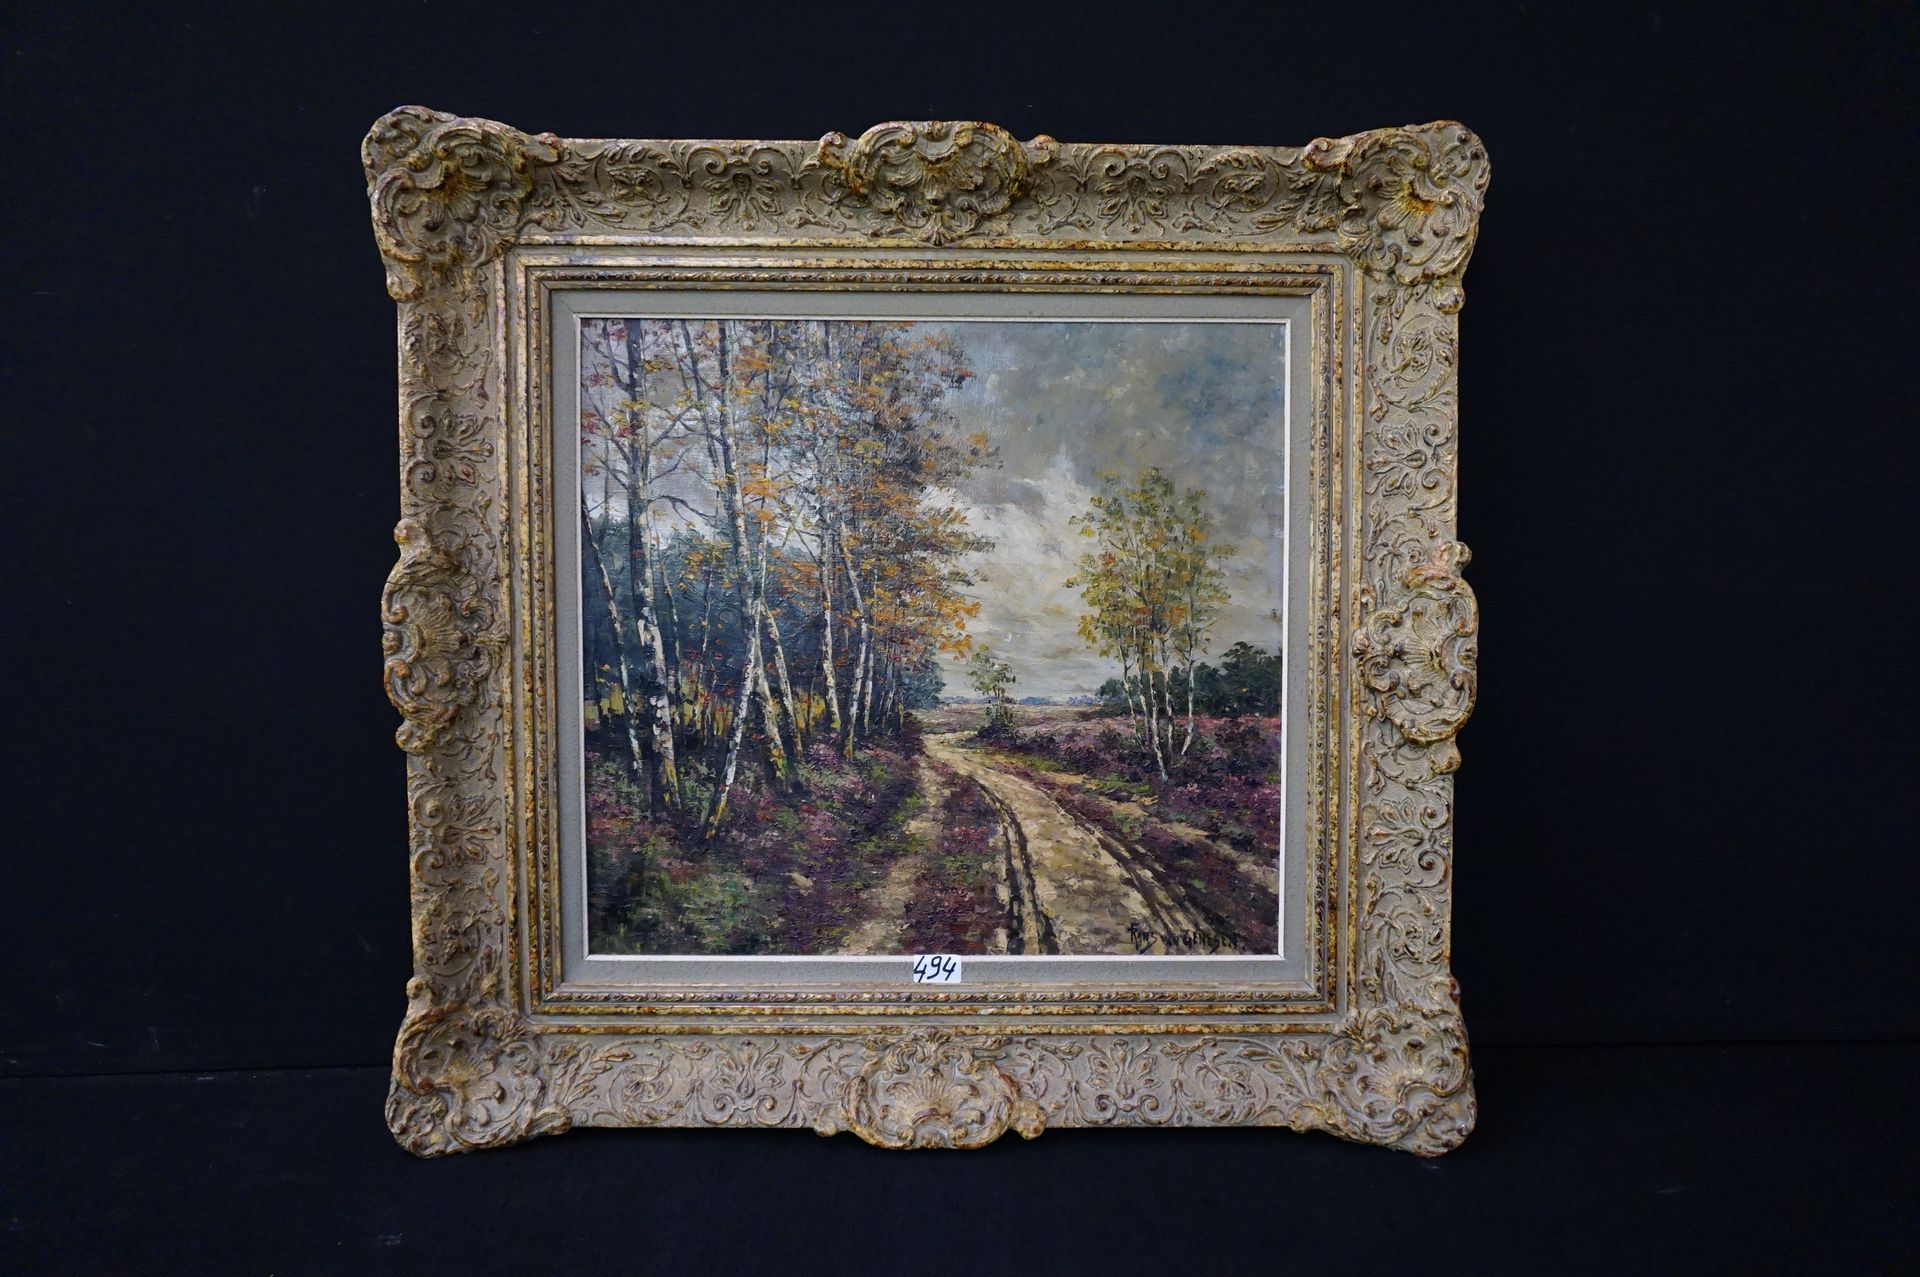 FRANS VAN GENESEN (1887 - 1945) "Heidelandschaft" - Öl auf Leinwand - 55 x 60 cm